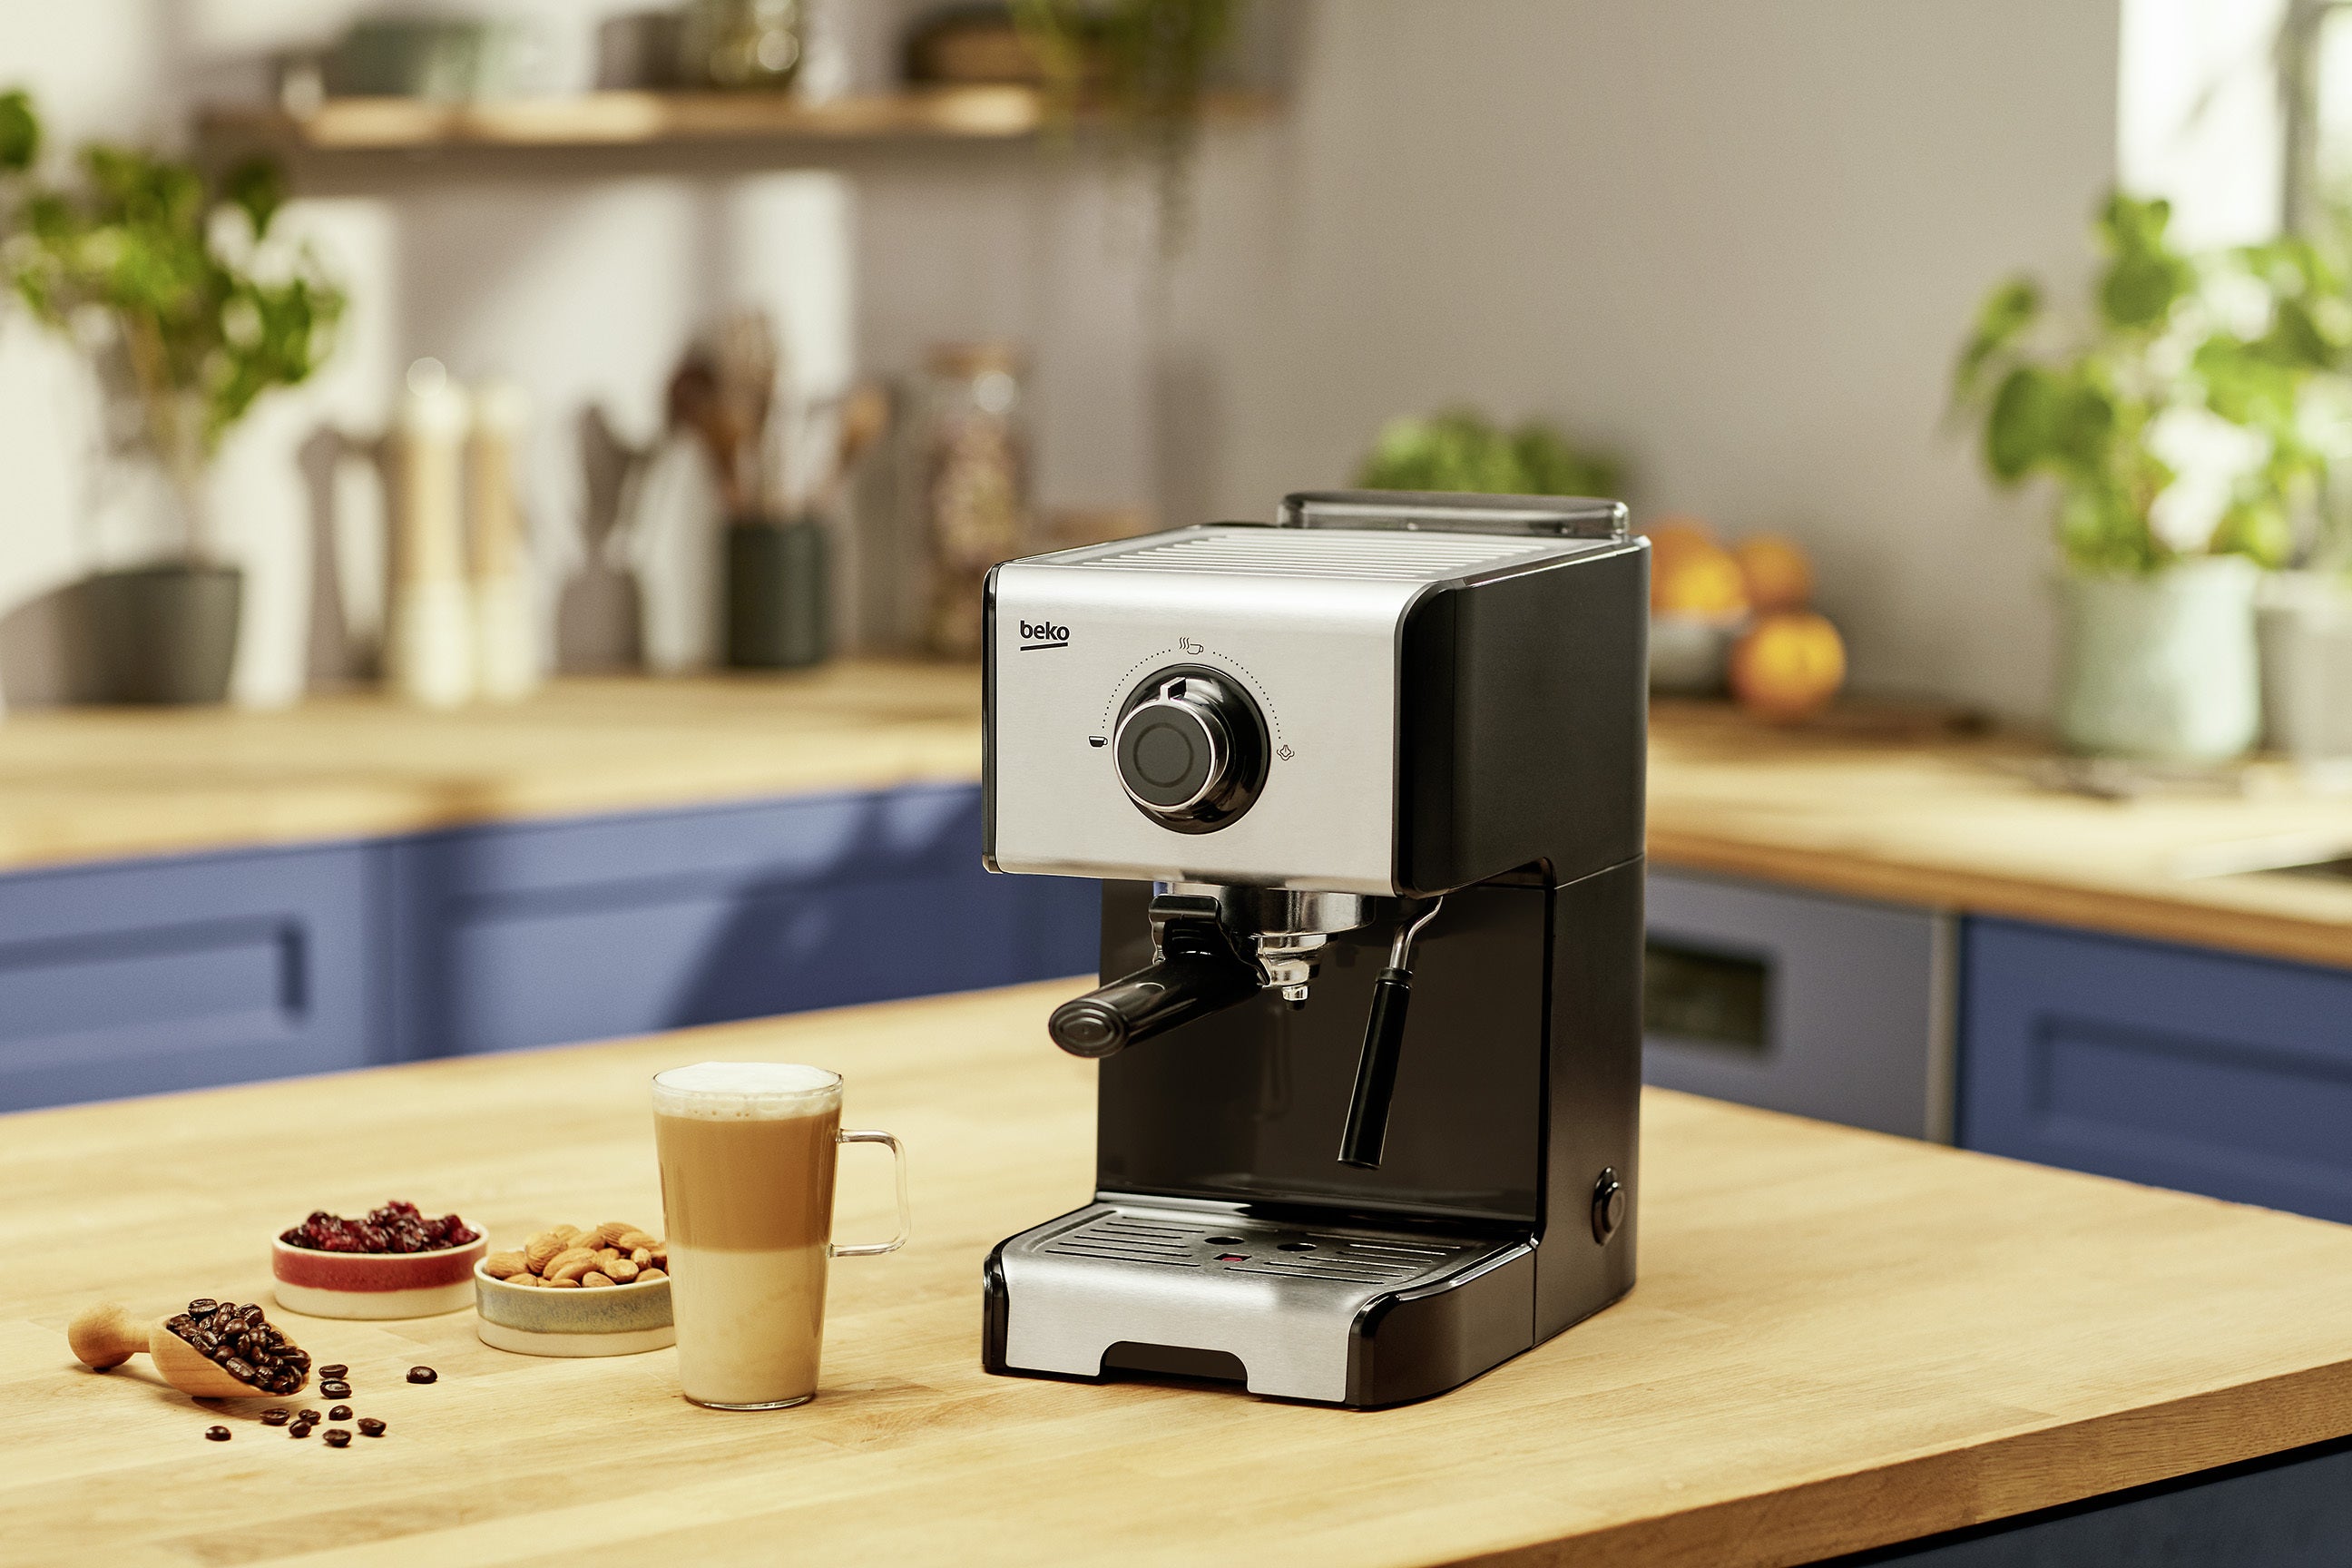 Beko Espresso Coffee Machine - CEP5152B | Kitchen Appliance | Halabh.com